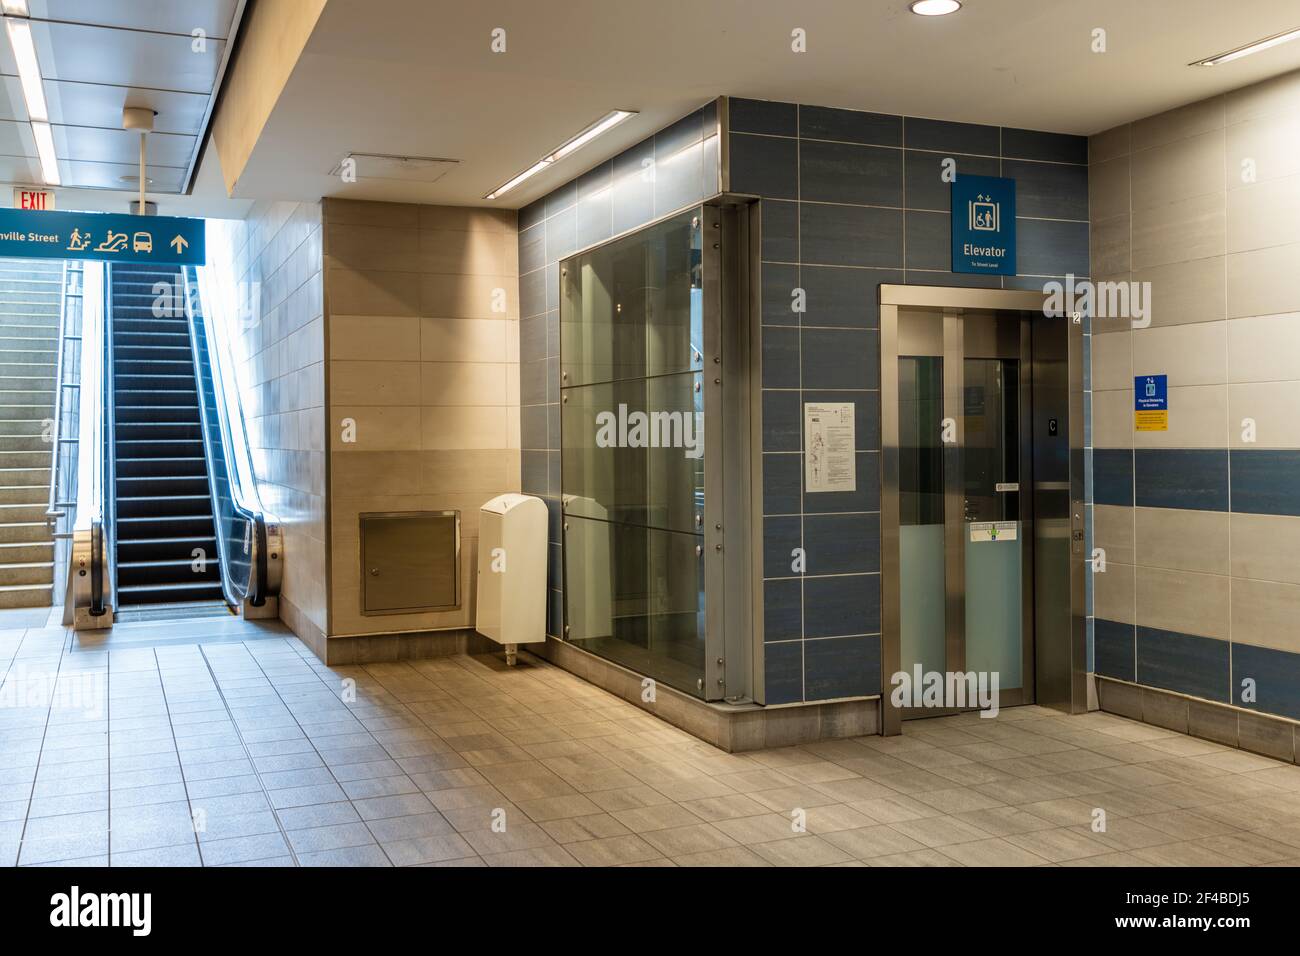 Intérieur de l'escalier roulant et de l'ascenseur de la station Waterfront. Ligne de métro SkyTrain Canada. Vancouver, Canada. Banque D'Images